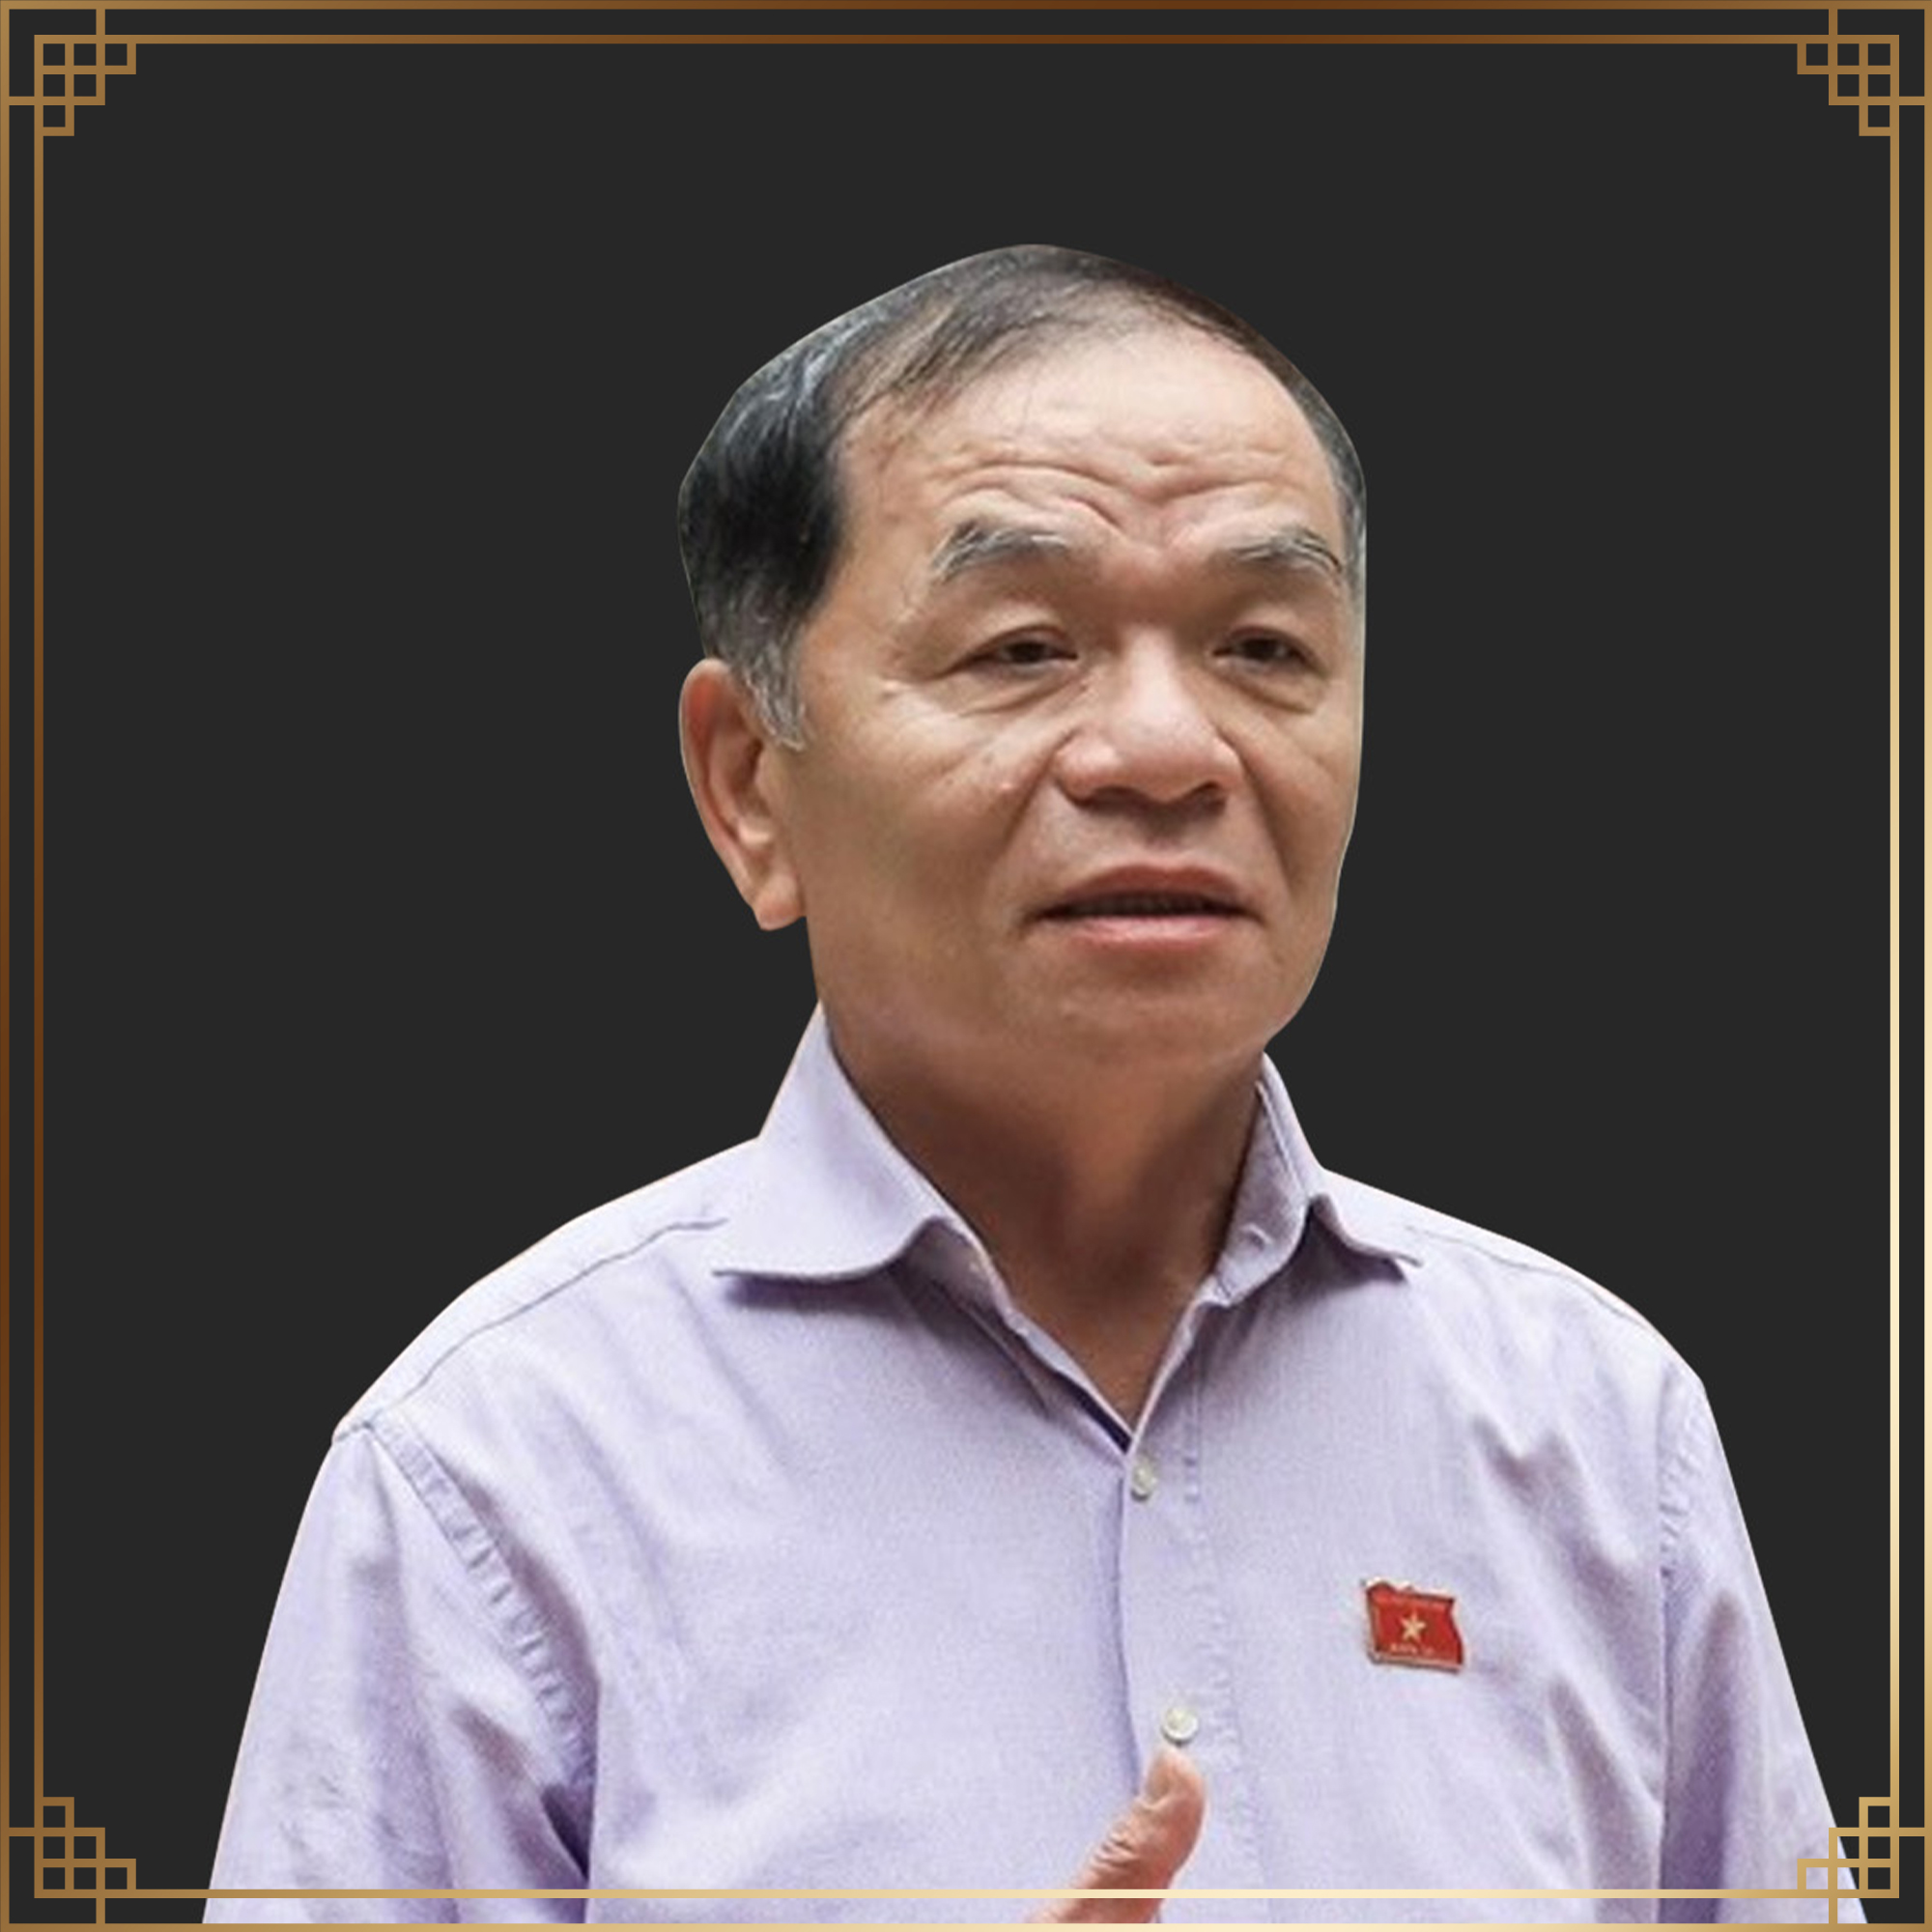 TS. Lê Thanh Vân